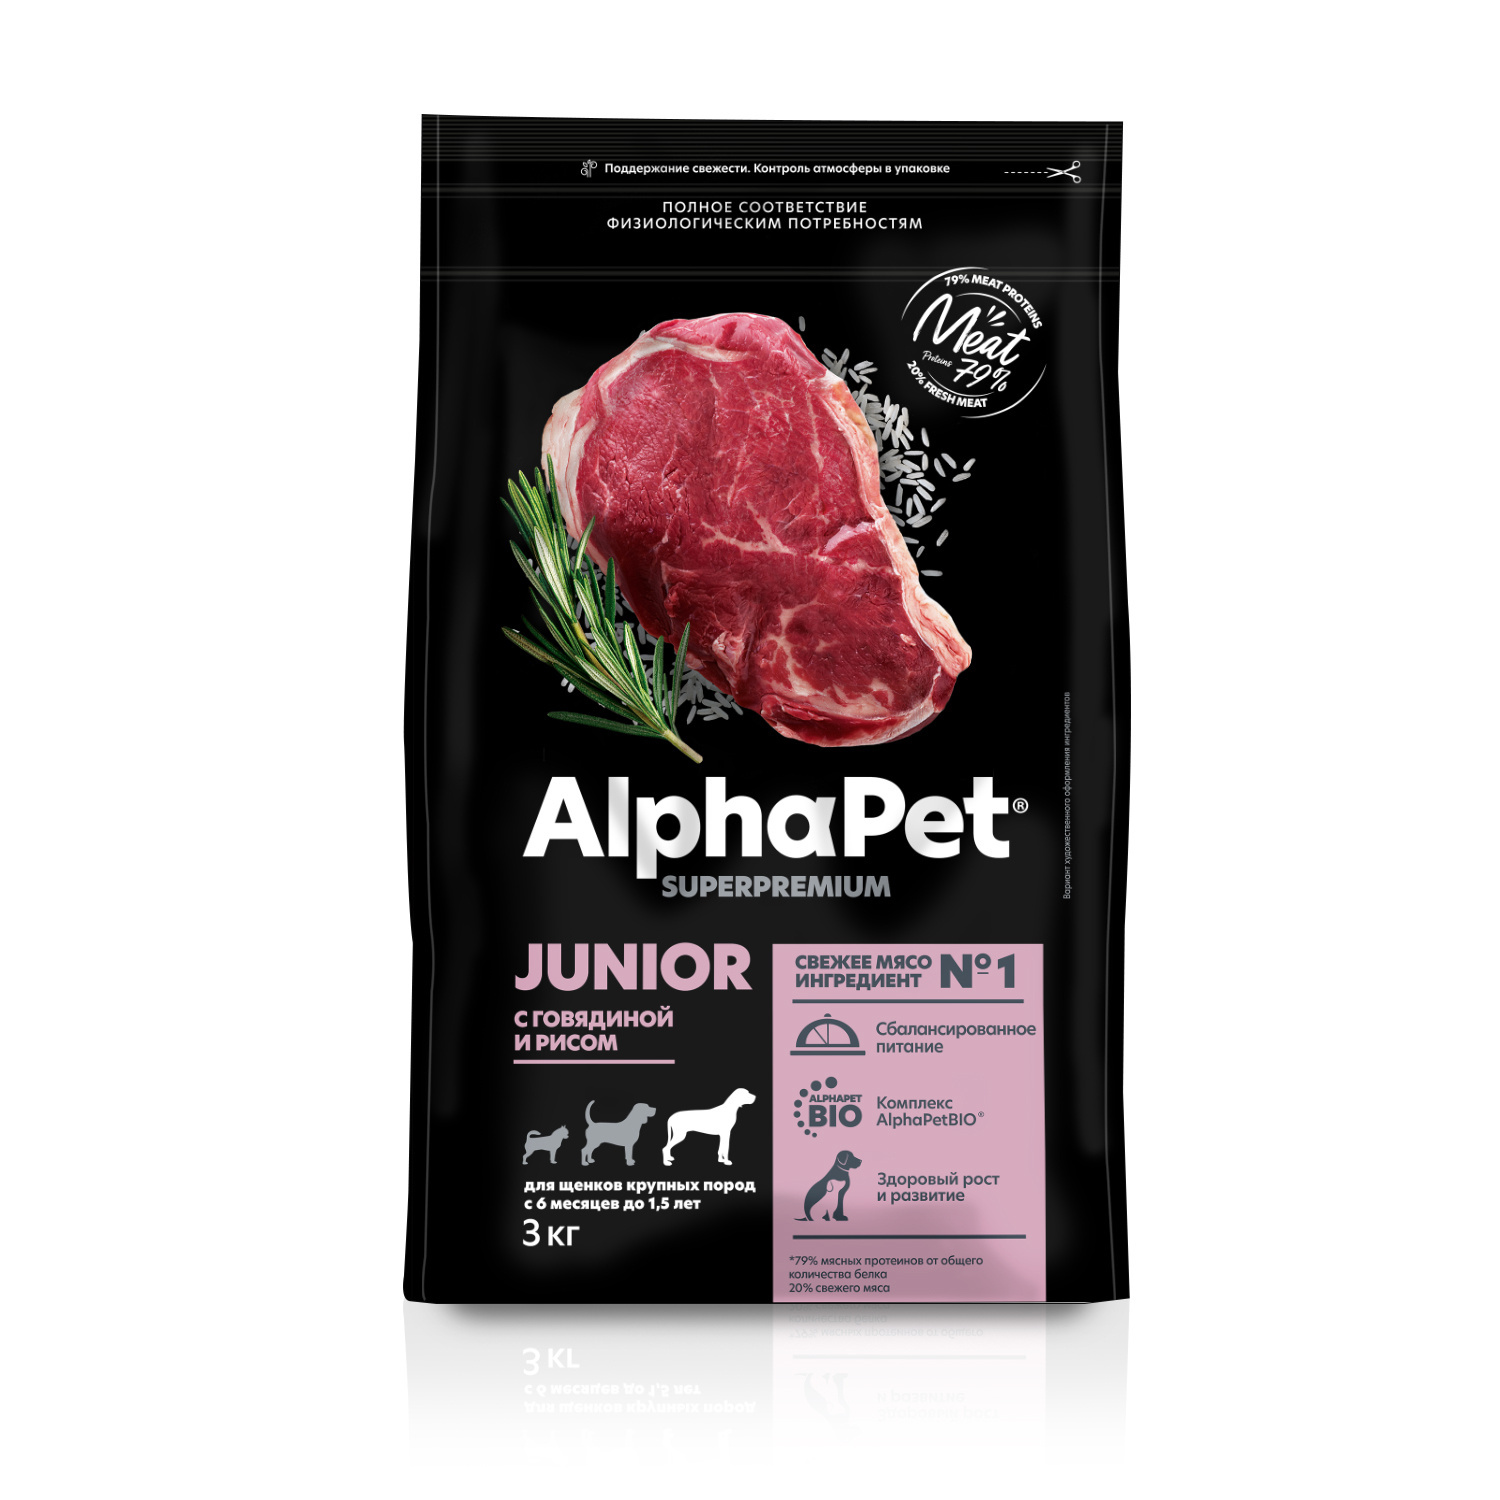 AlphaPet AlphaPet сухой полнорационный корм с говядиной и рисом для щенков крупных пород с 6 месяцев до 1,5 лет (12 кг)